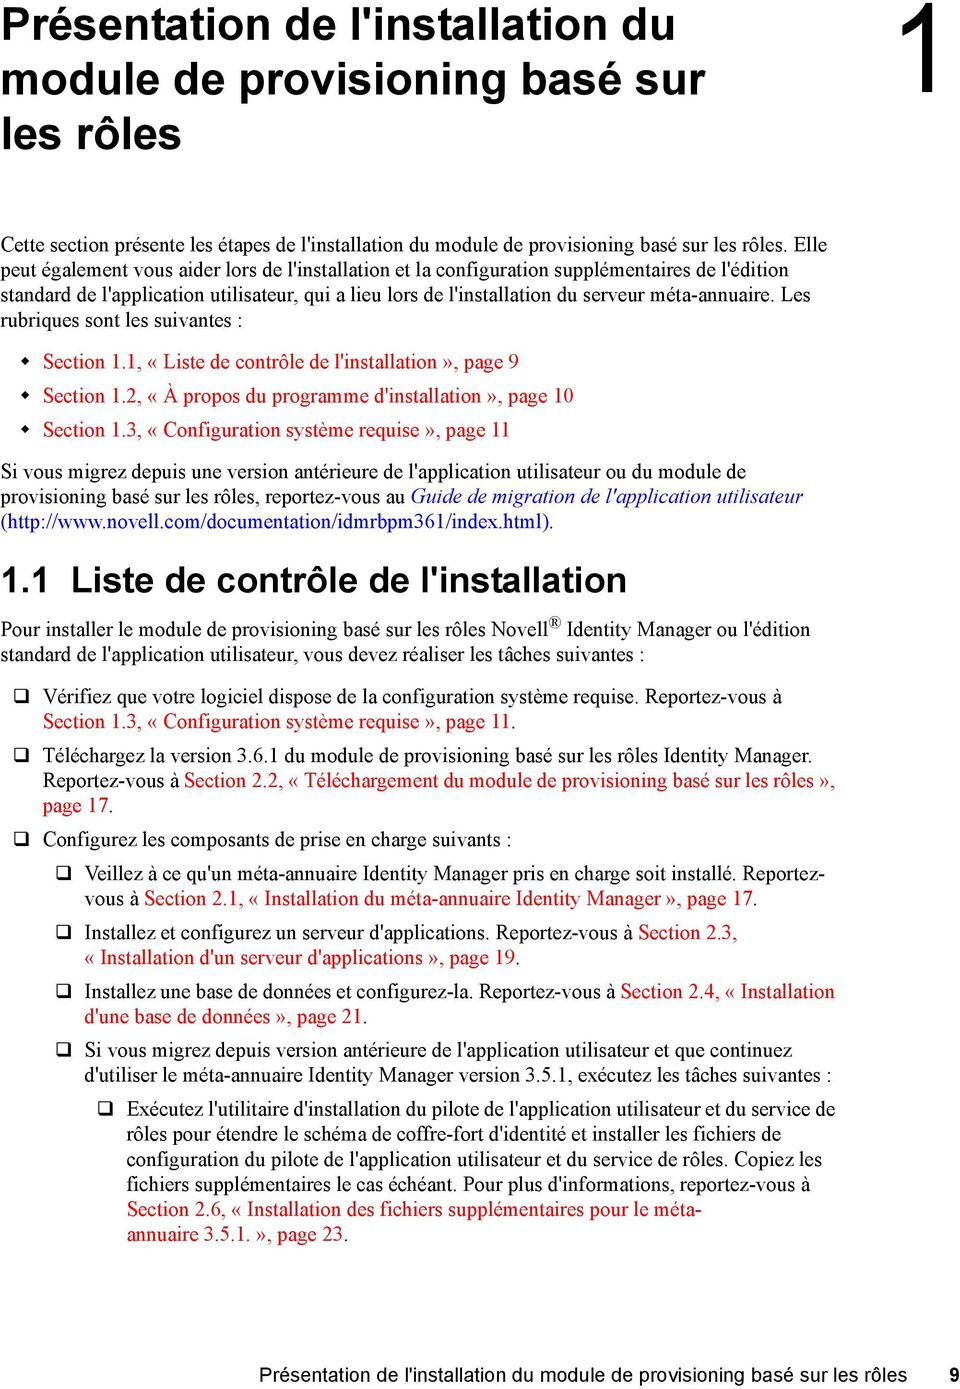 méta-annuaire. Les rubriques sont les suivantes : Section 1.1, «Liste de contrôle de l'installation», page 9 Section 1.2, «À propos du programme d'installation», page 10 Section 1.